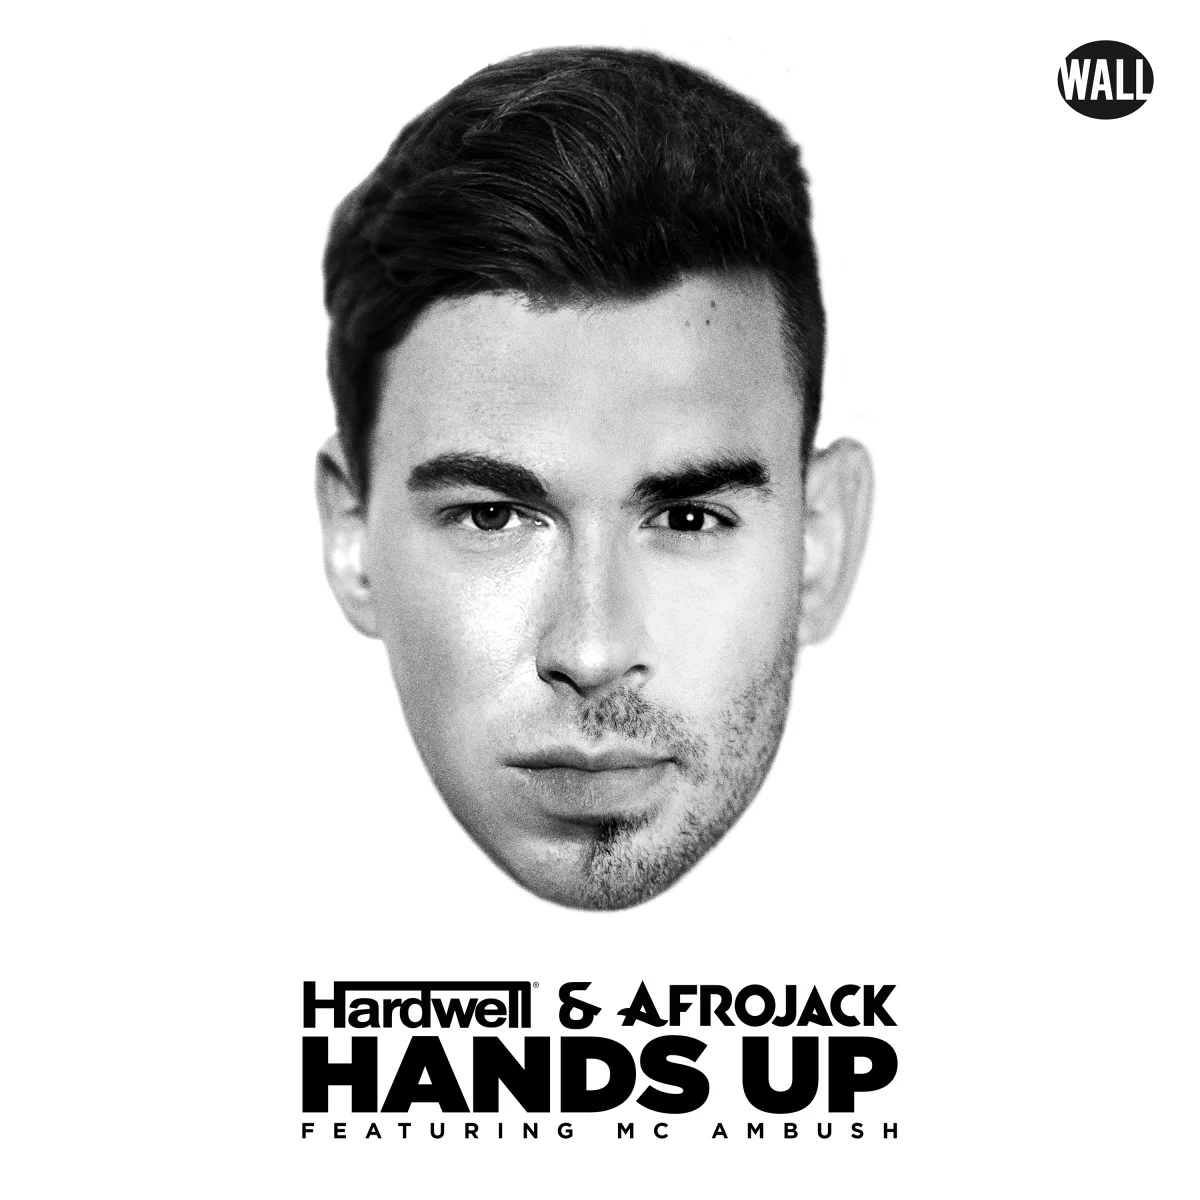 Hands Up - Hardwell & Afrojack⁠ feat. MC Ambush